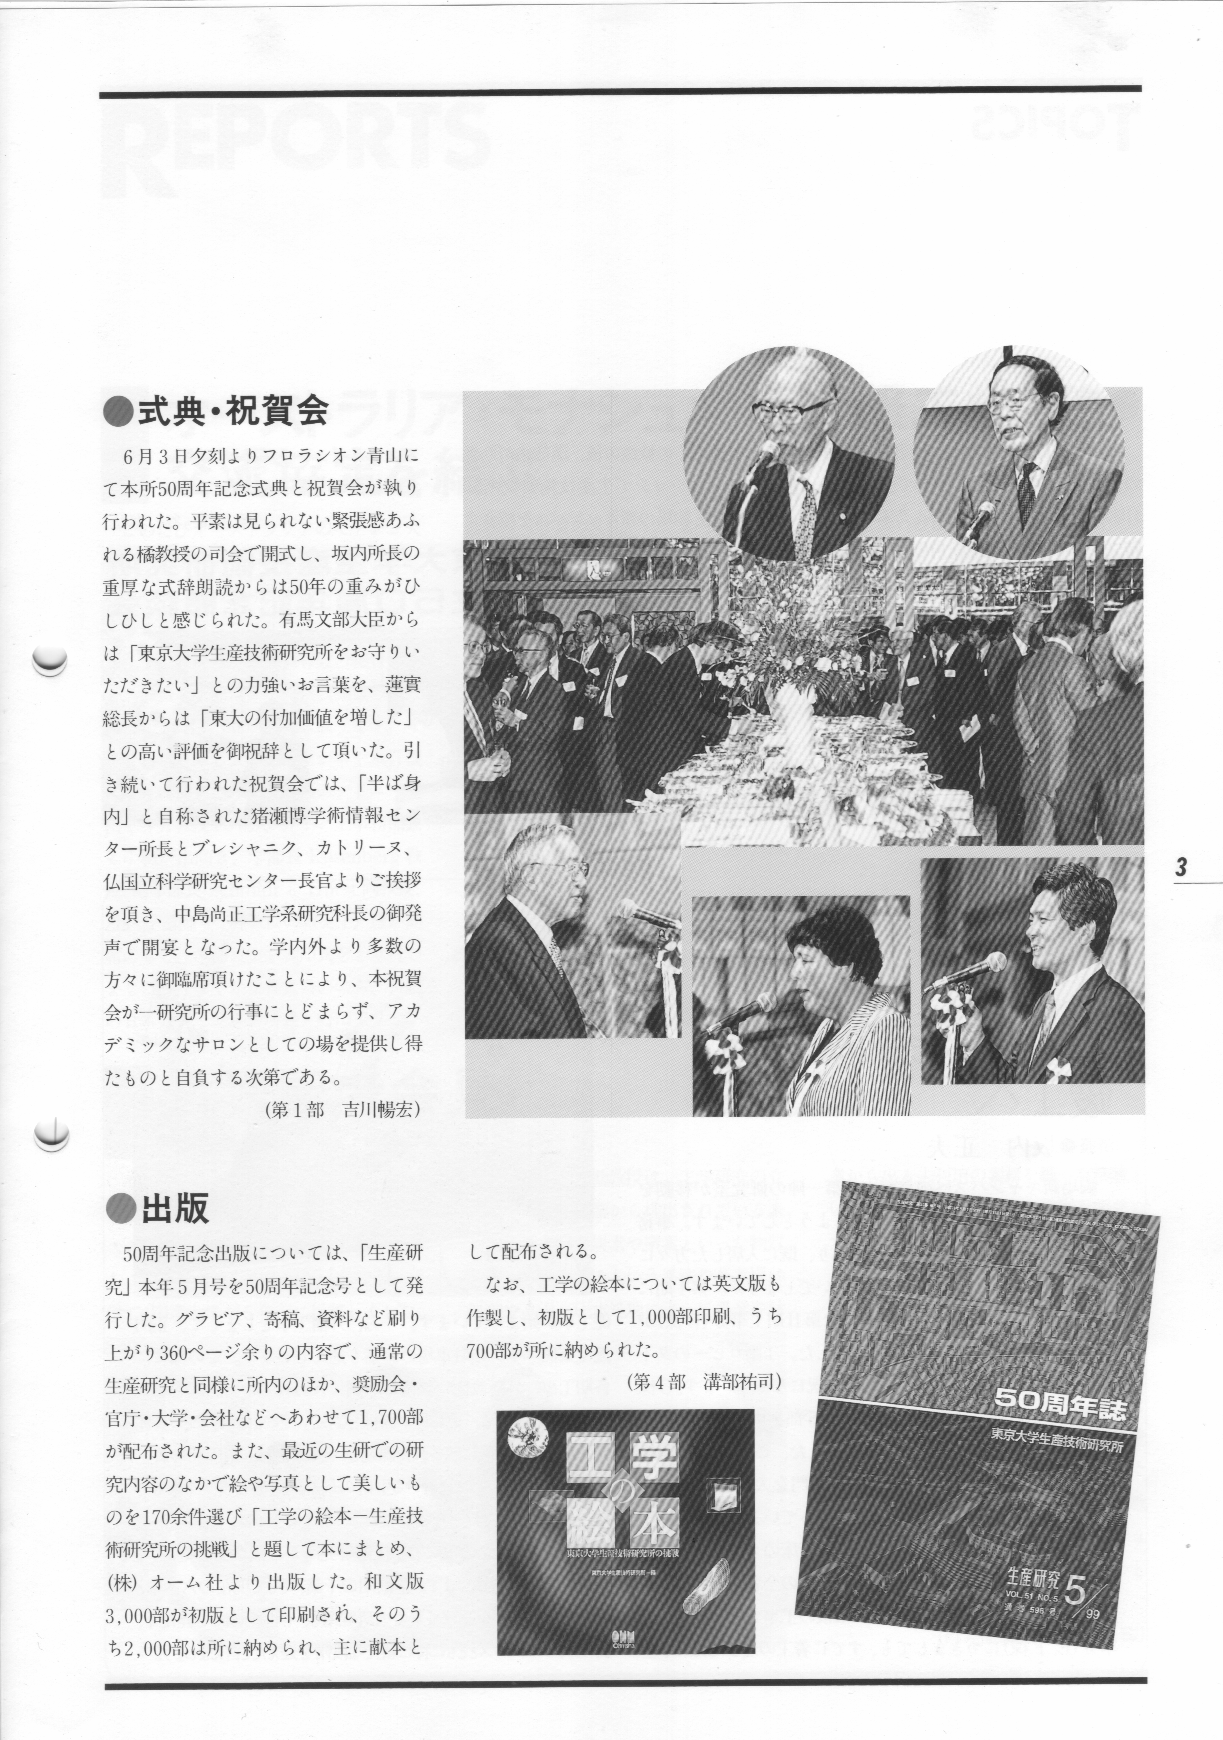 生研ニュース19990801.png